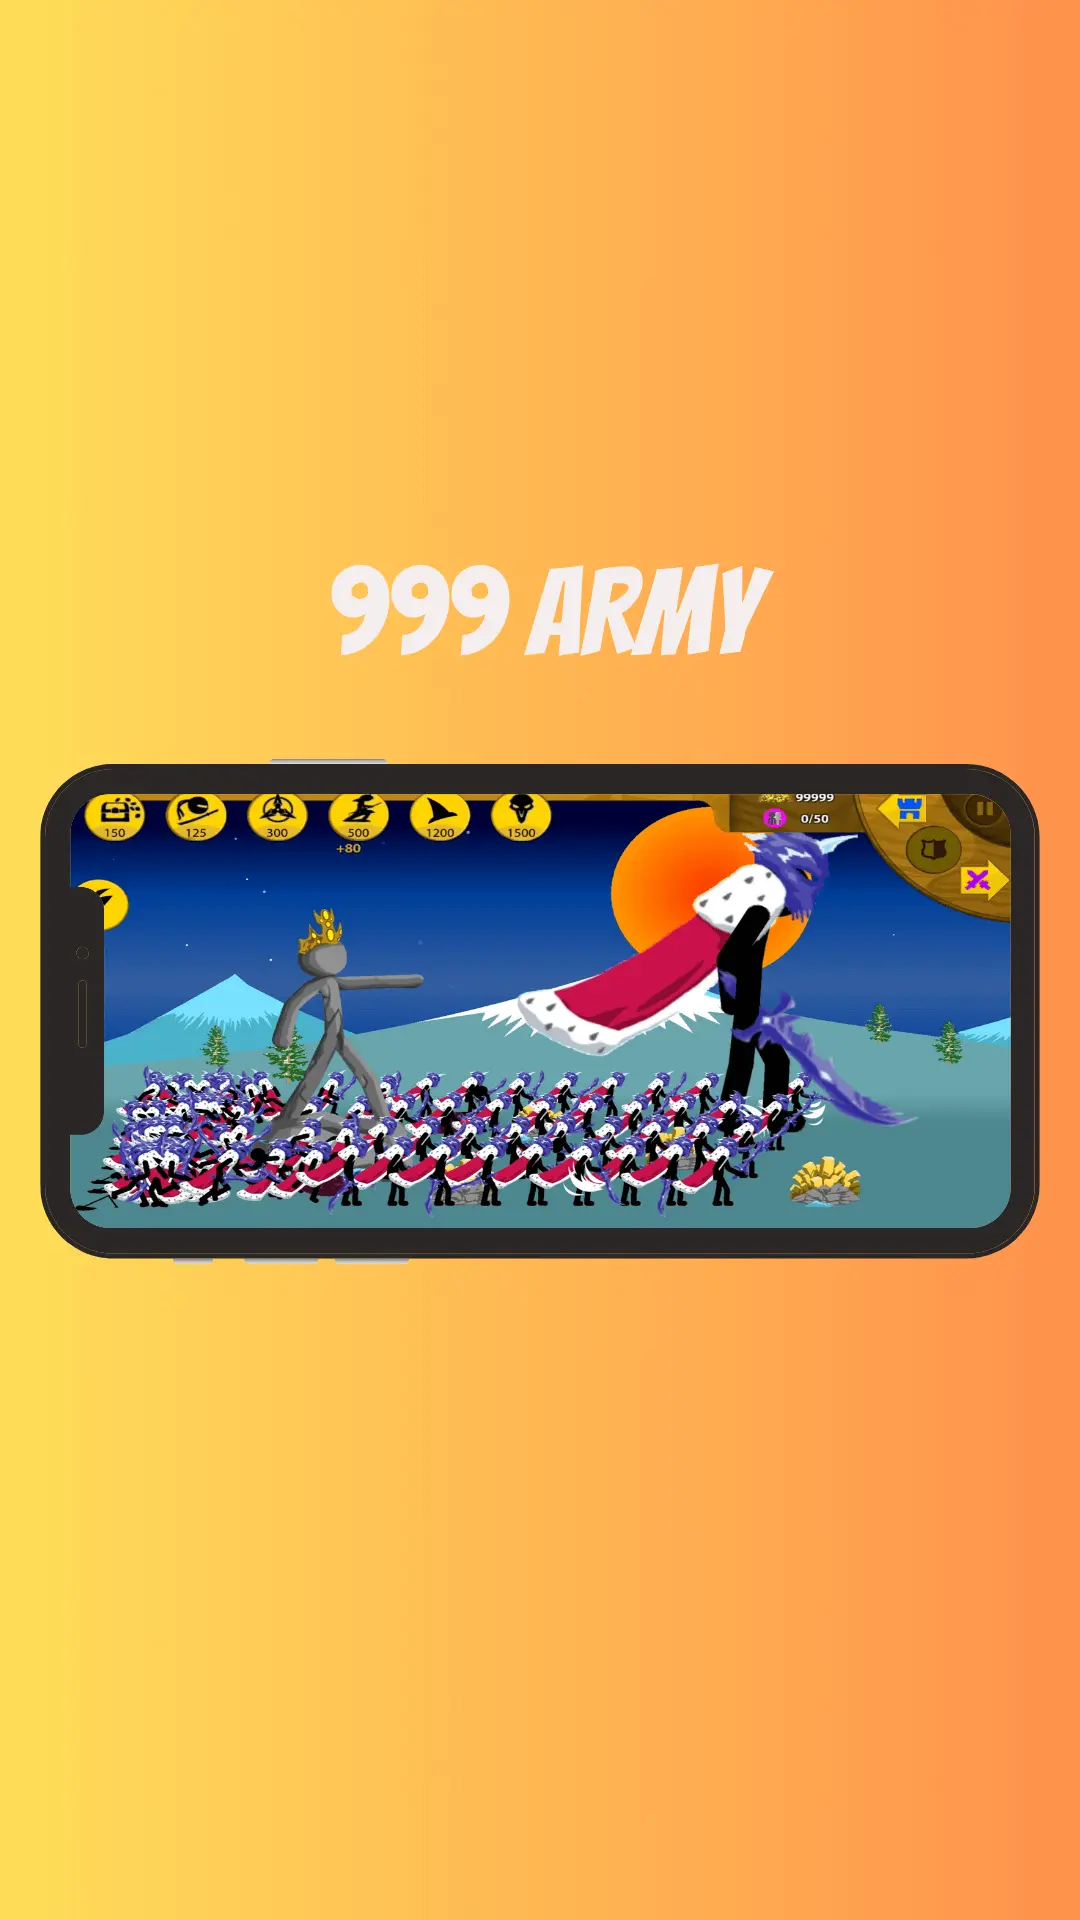 999 ARMY